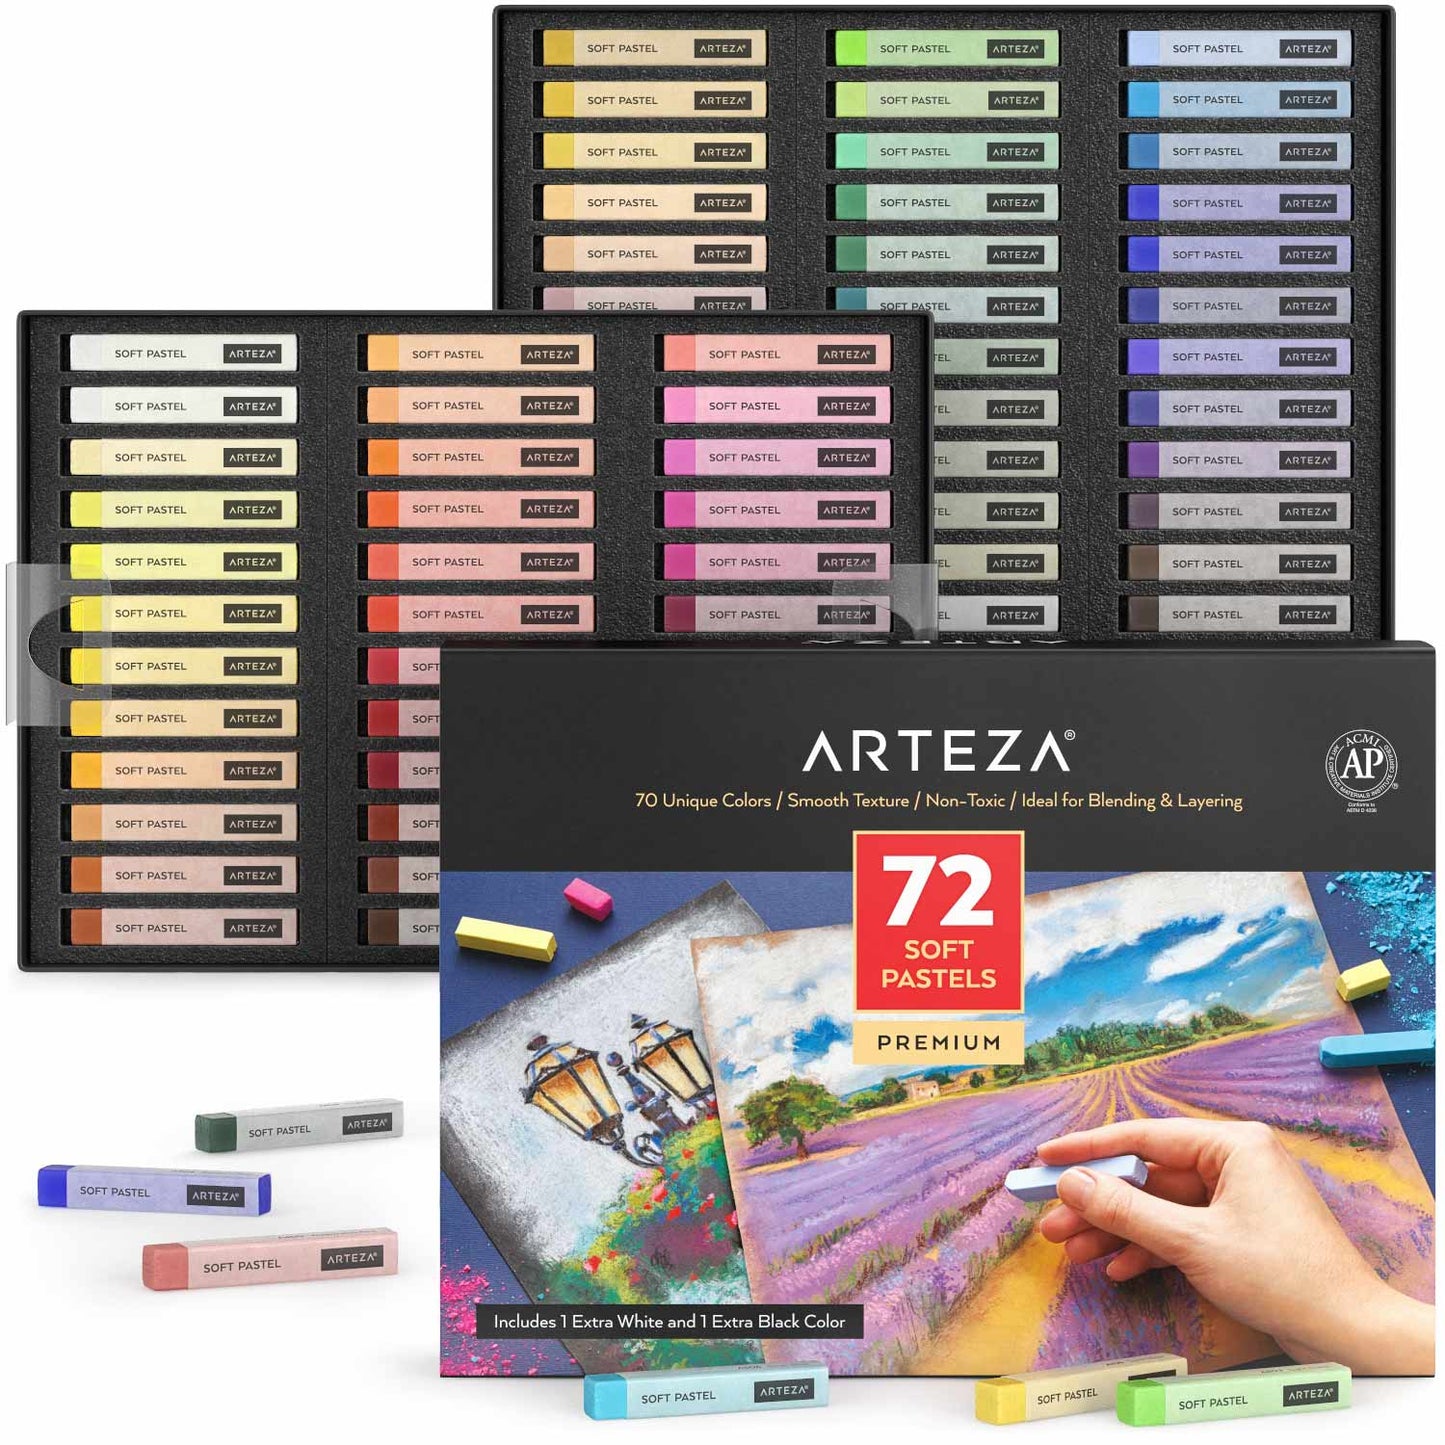 https://arteza.com/cdn/shop/products/soft-pastels-assorted-colors-set-of-72_f19F37dU.jpg?v=1652892694&width=1445